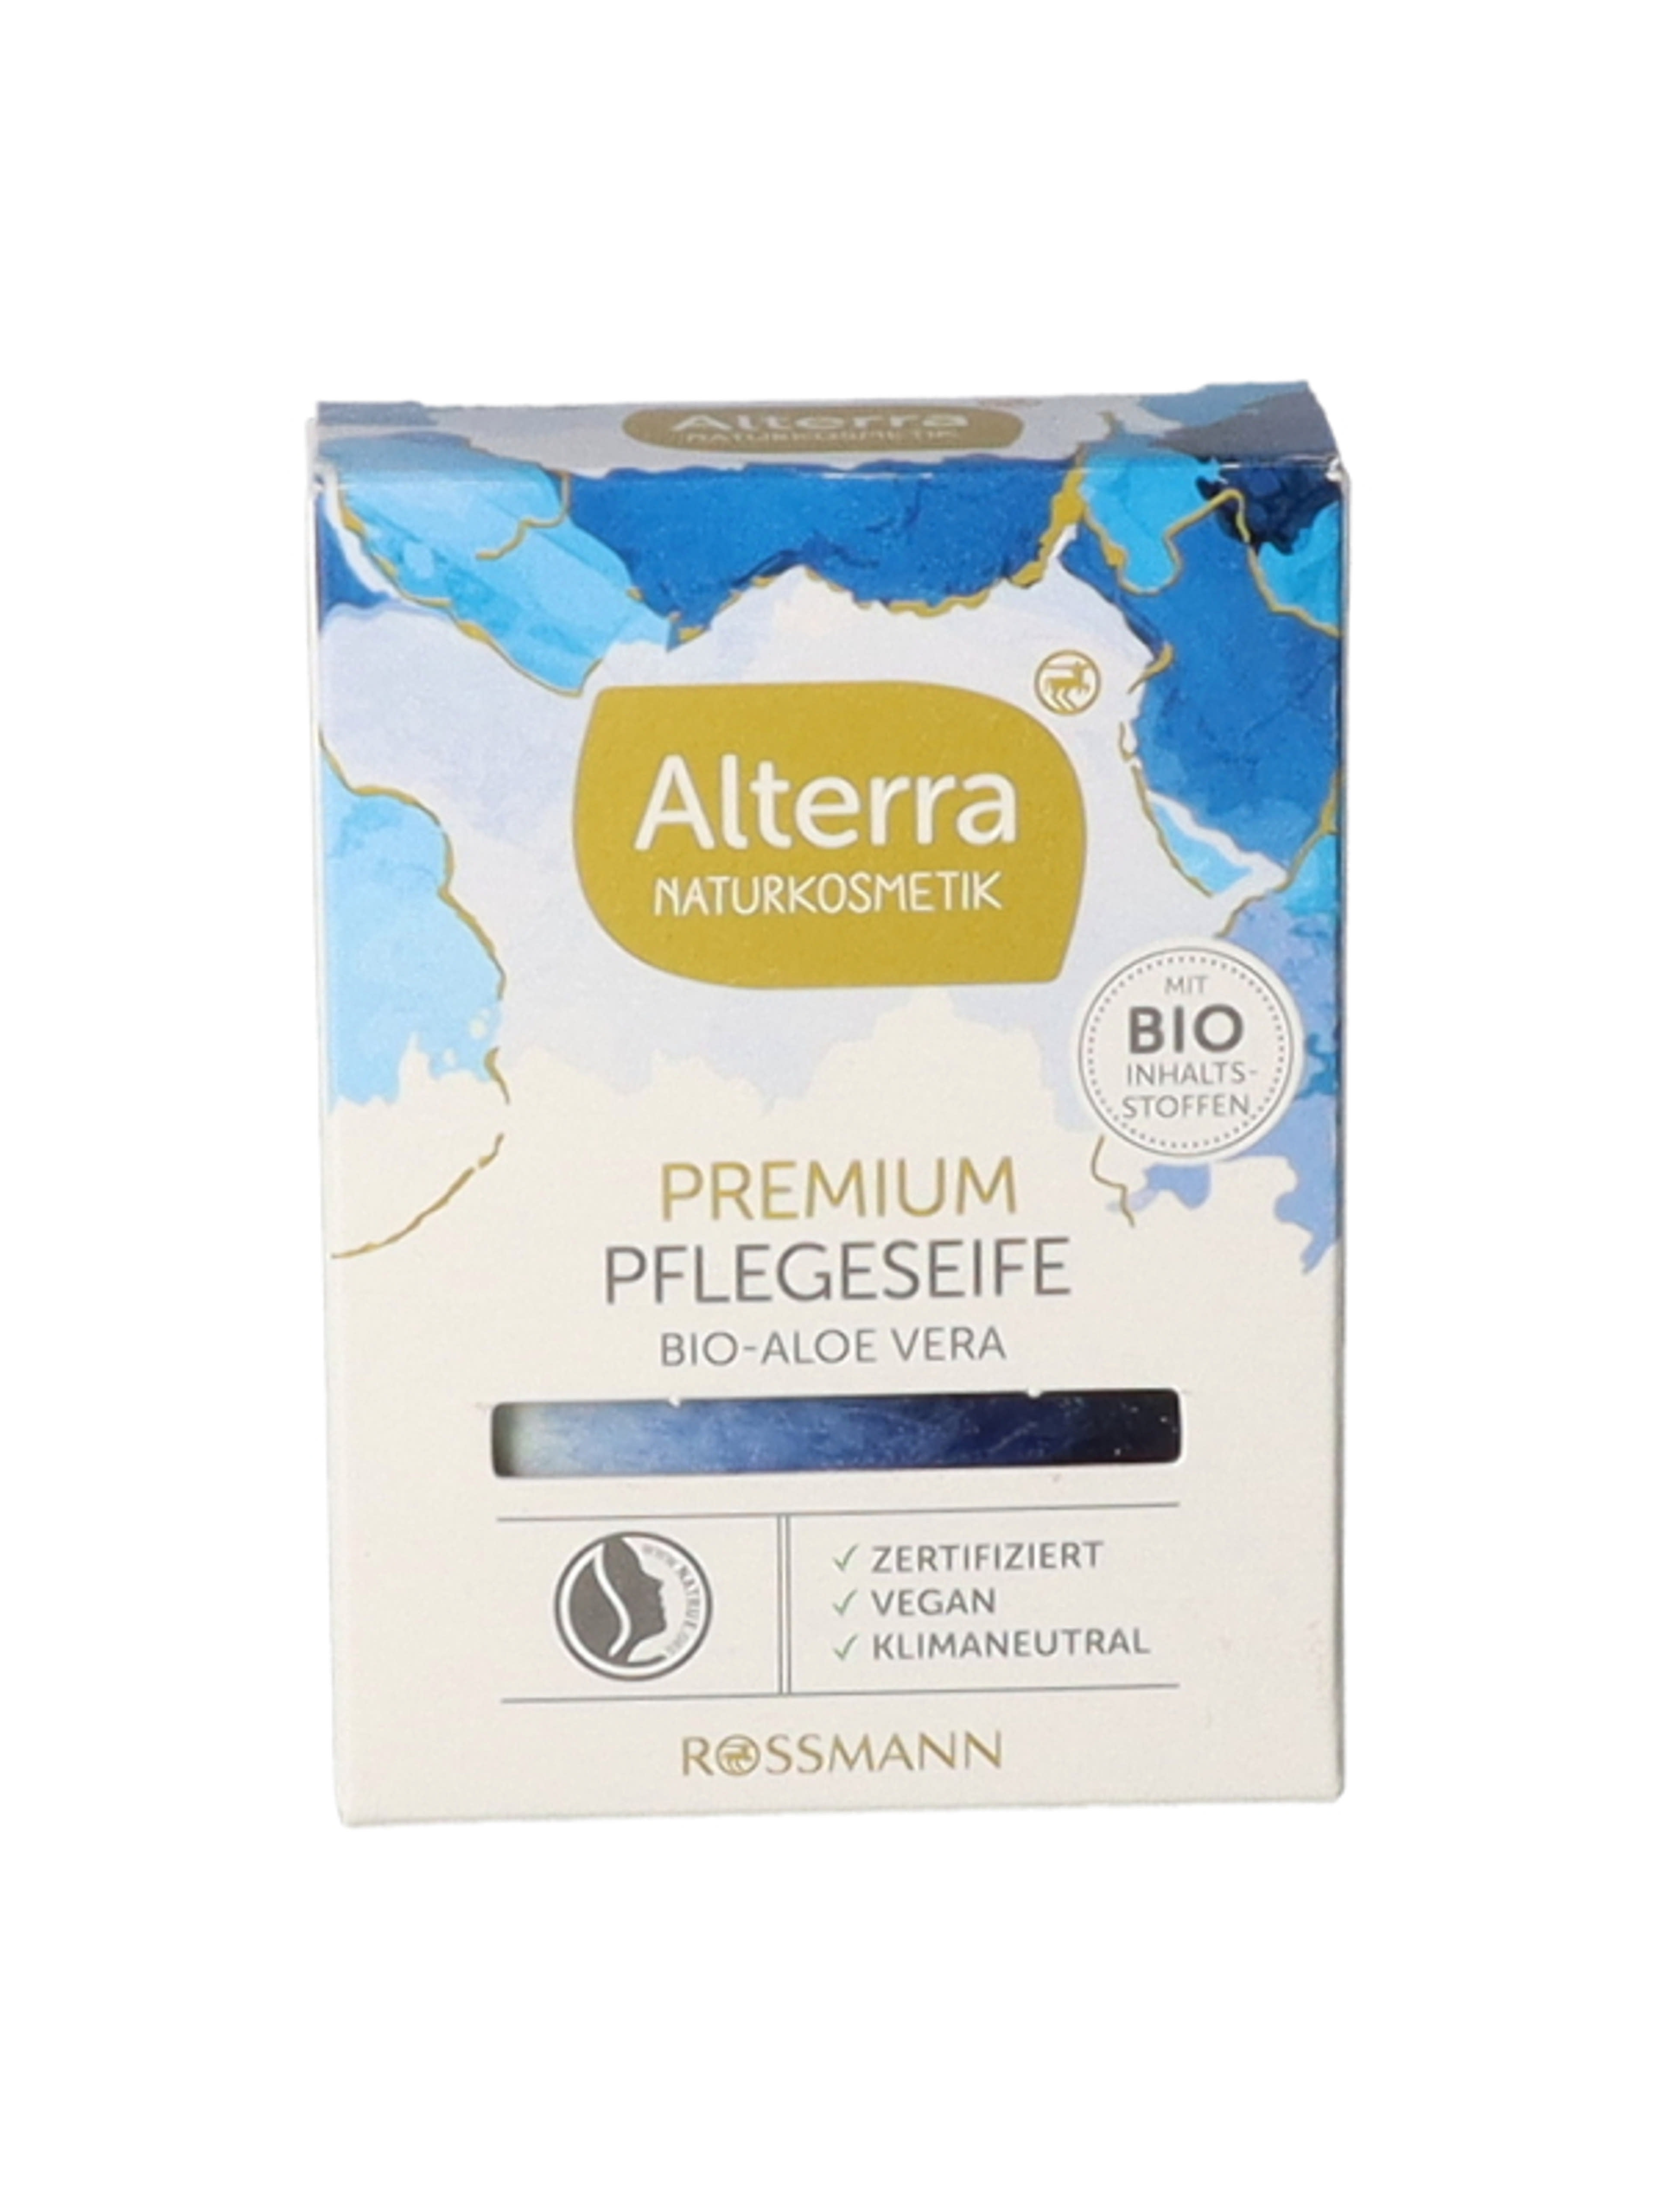 Alterra Naturkosmetik Premium ápoló szappan - 1 db